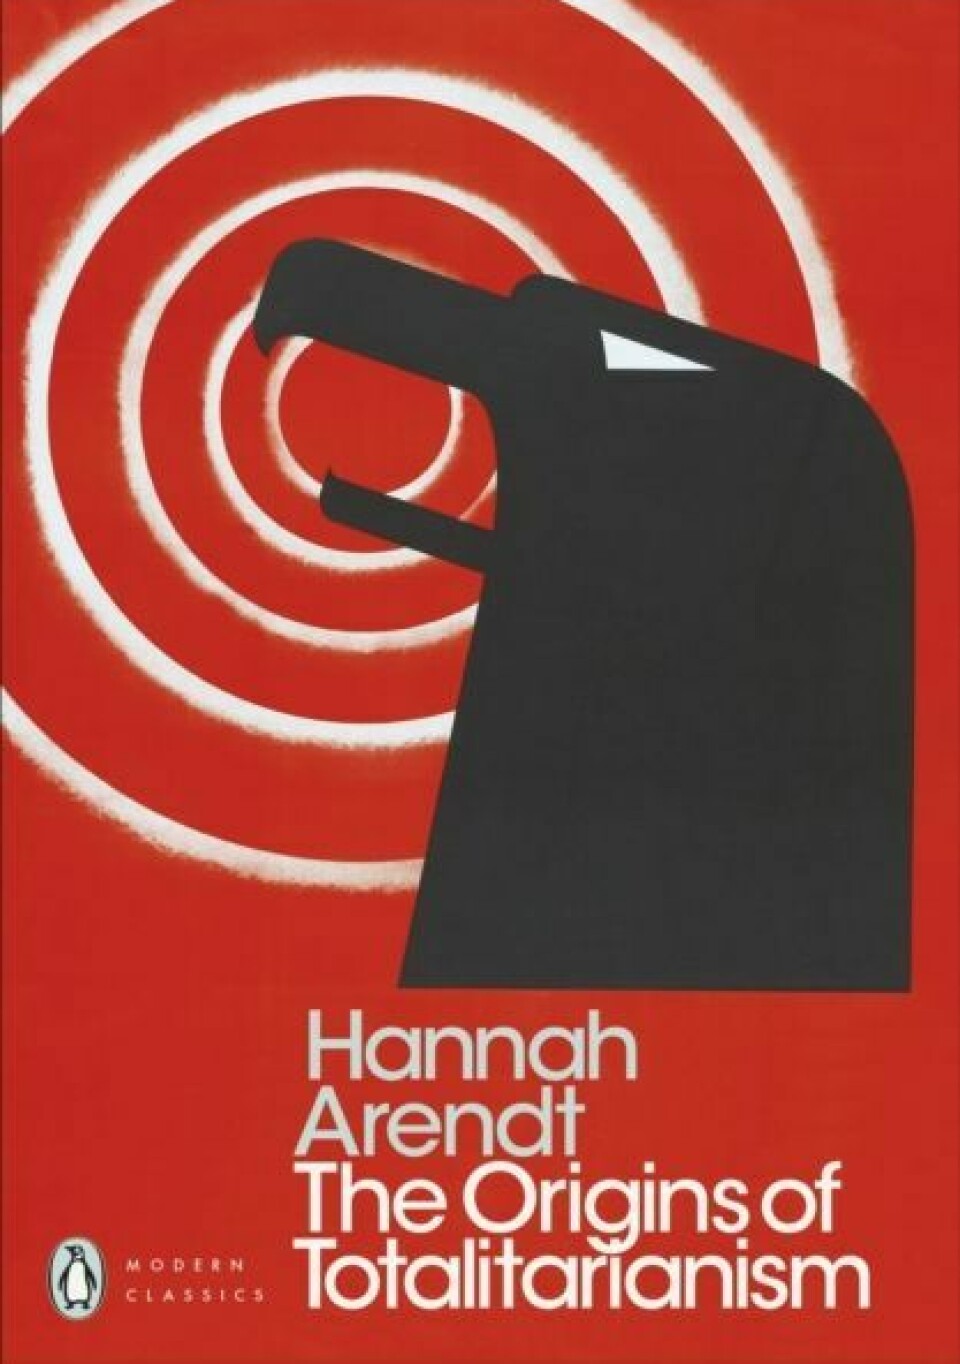 Hannah Arendts The origins of totalitarianism ble publisert i 1951. I denne boken analyserer hun nazismen og stalinismen - de store totalitære bevegelsene i den første halvdelen av det 20. århundret.